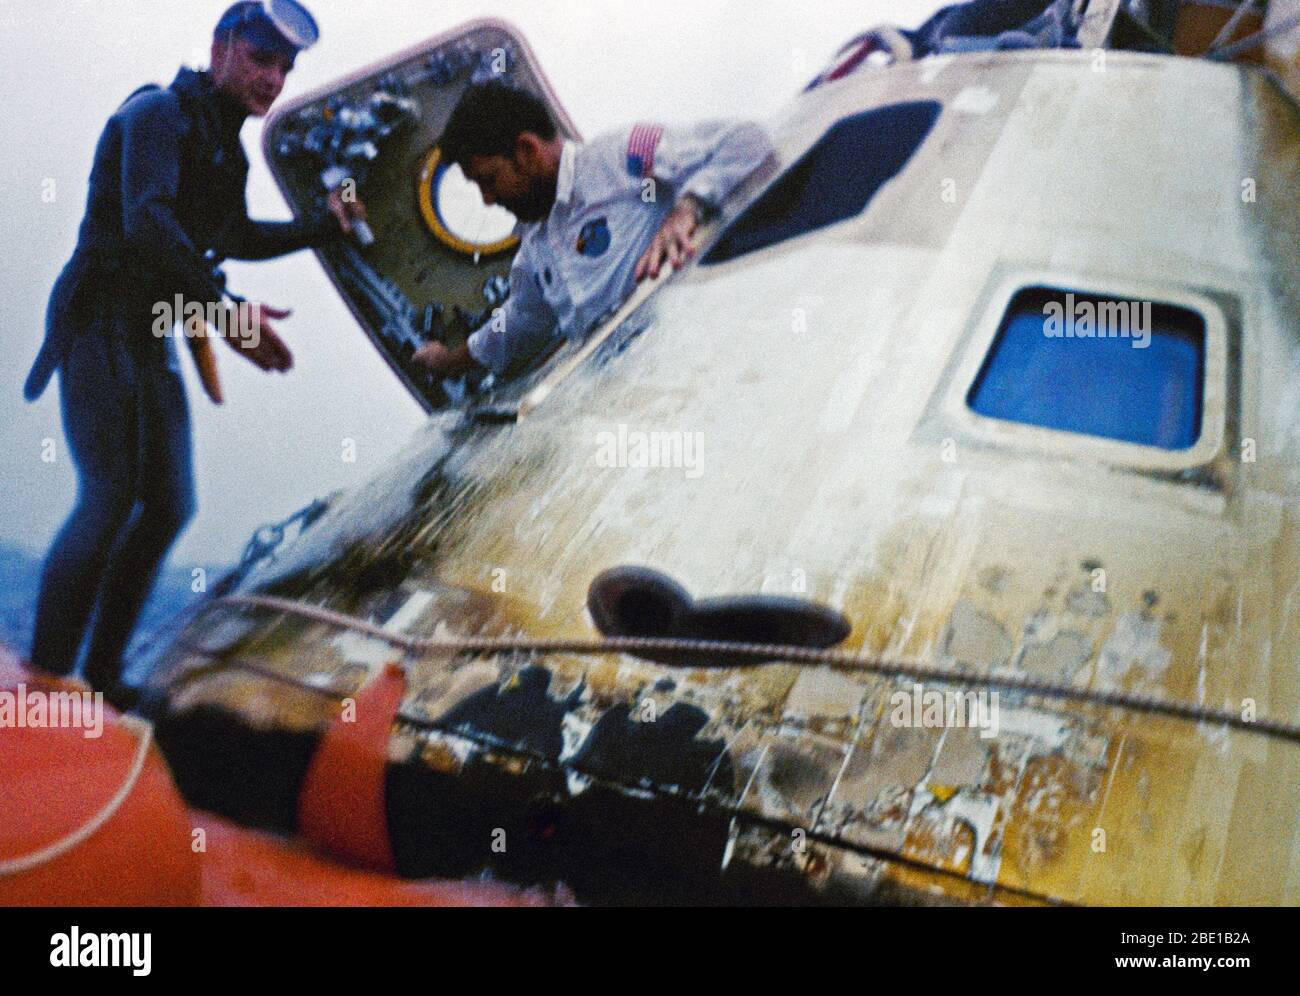 Astronauta Walter Schirra M., Jr., Apollo 7 commander, esce il veicolo spaziale durante le operazioni di recupero in Atlantico. Egli è assistito da un membro dell'U.S. Navy Frogman team. L' Apollo 7 veicoli spaziali spruzzato verso il basso a 7:11.00, 22 ottobre 1968, circa 200 miglia nautiche a sud-sud-ovest di Bermuda. Foto Stock